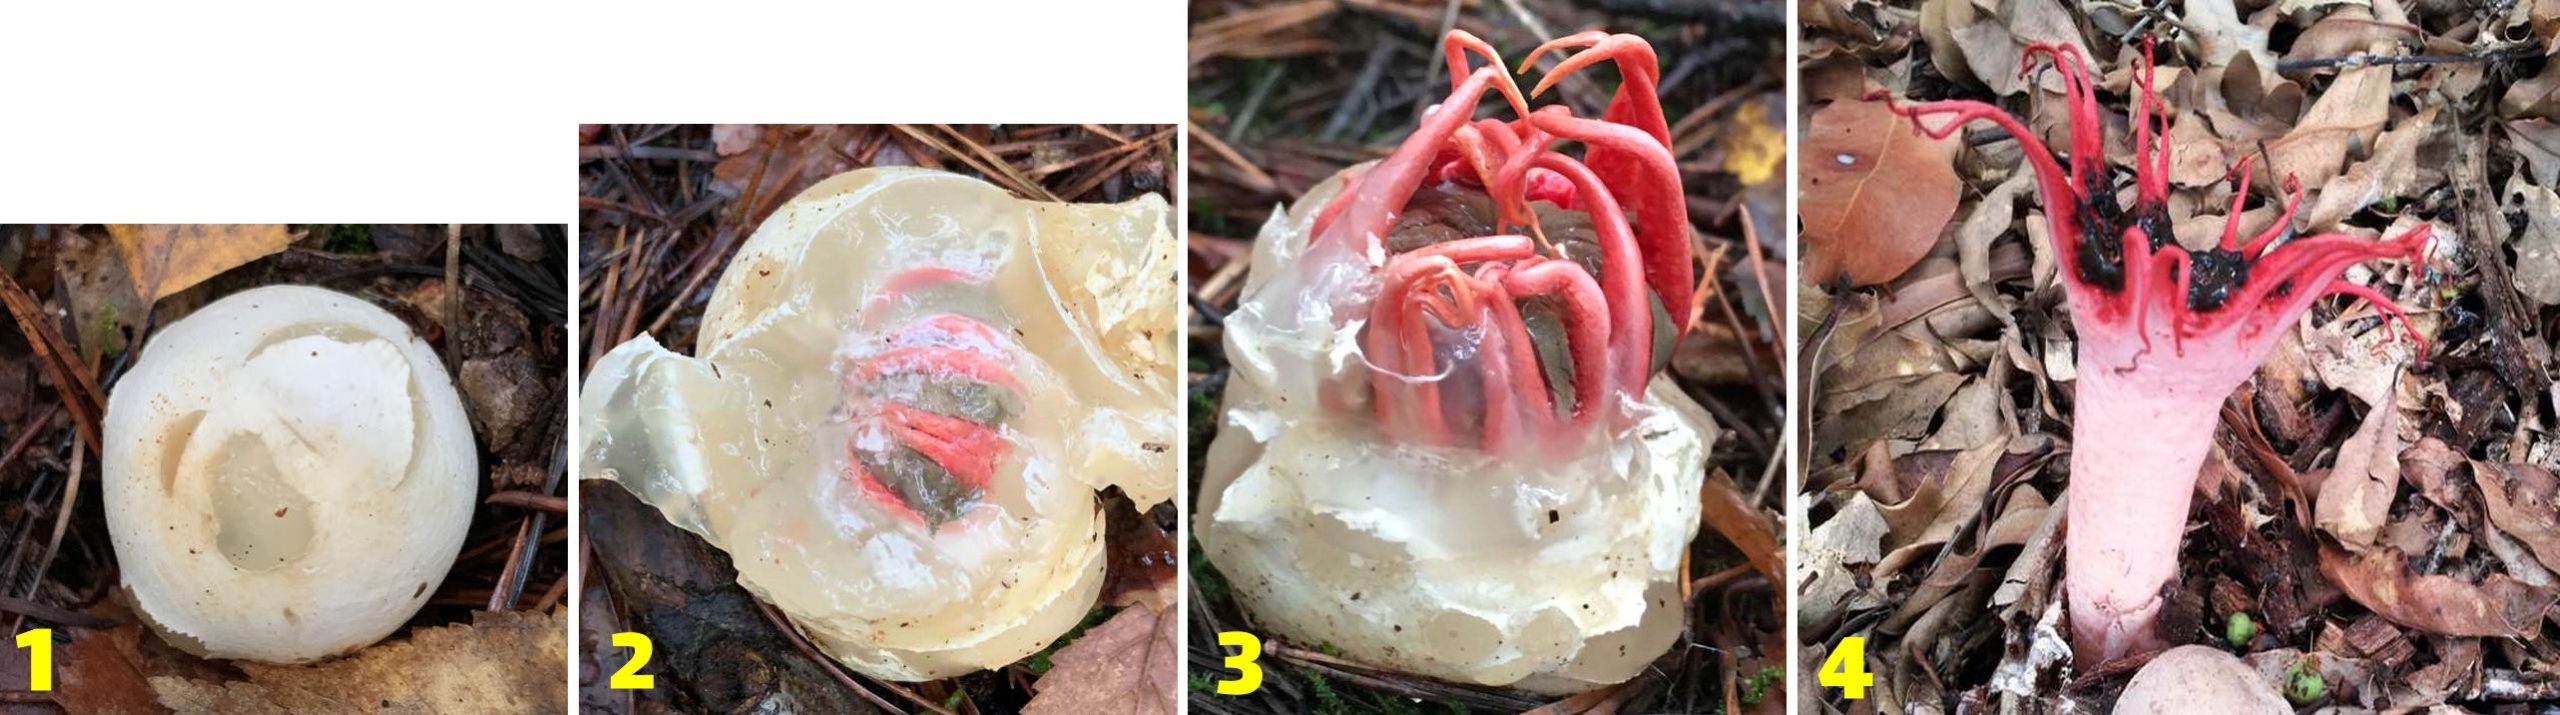 مراحل رشد قارچ ستاره دریایی